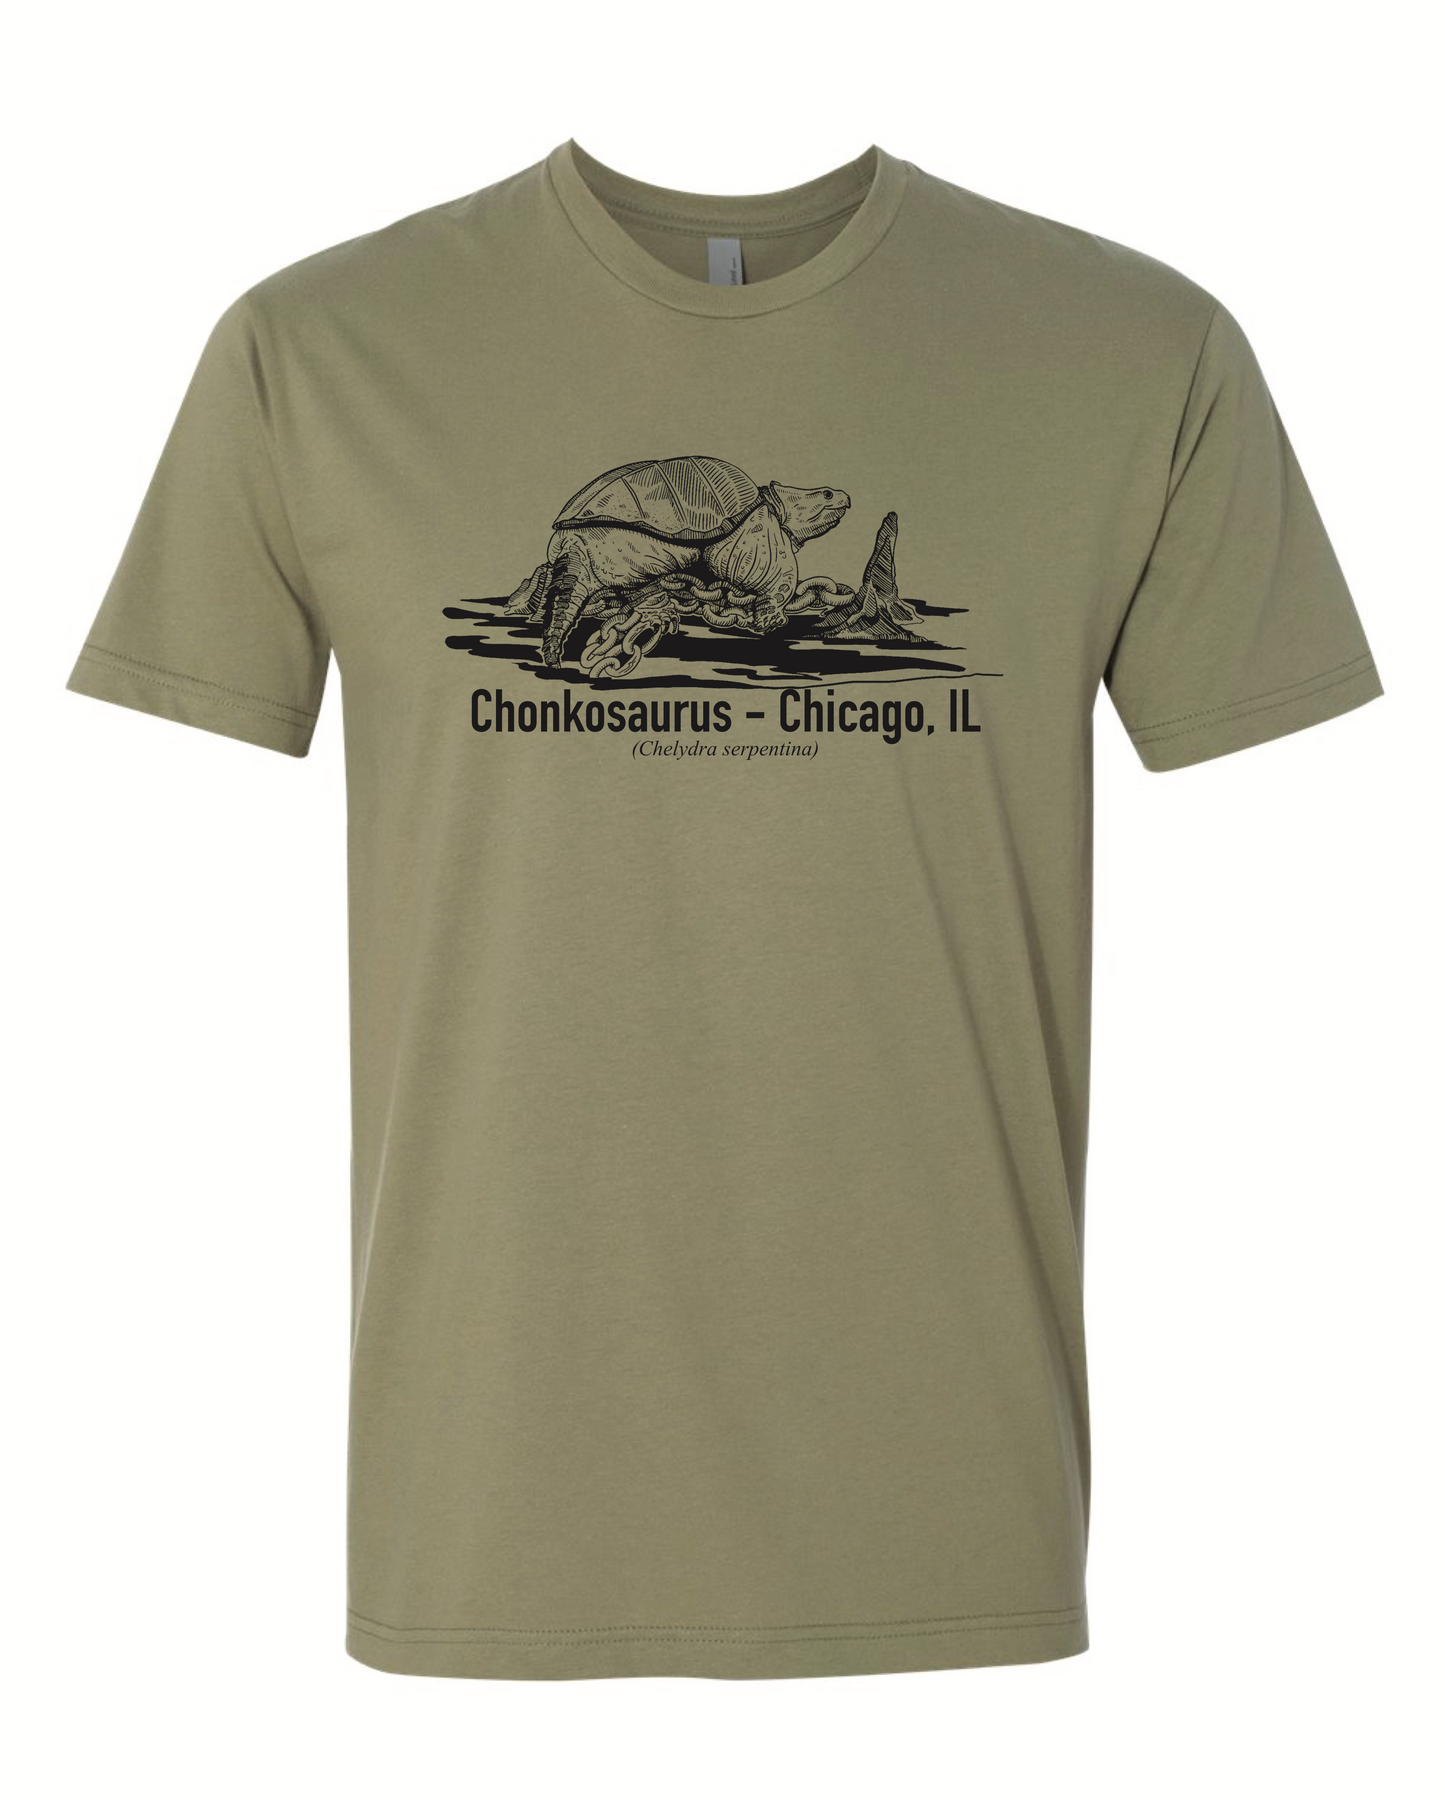 Chonkosaurus Chicago, IL - Short Sleeve T-Shirt - Olive - Unisex